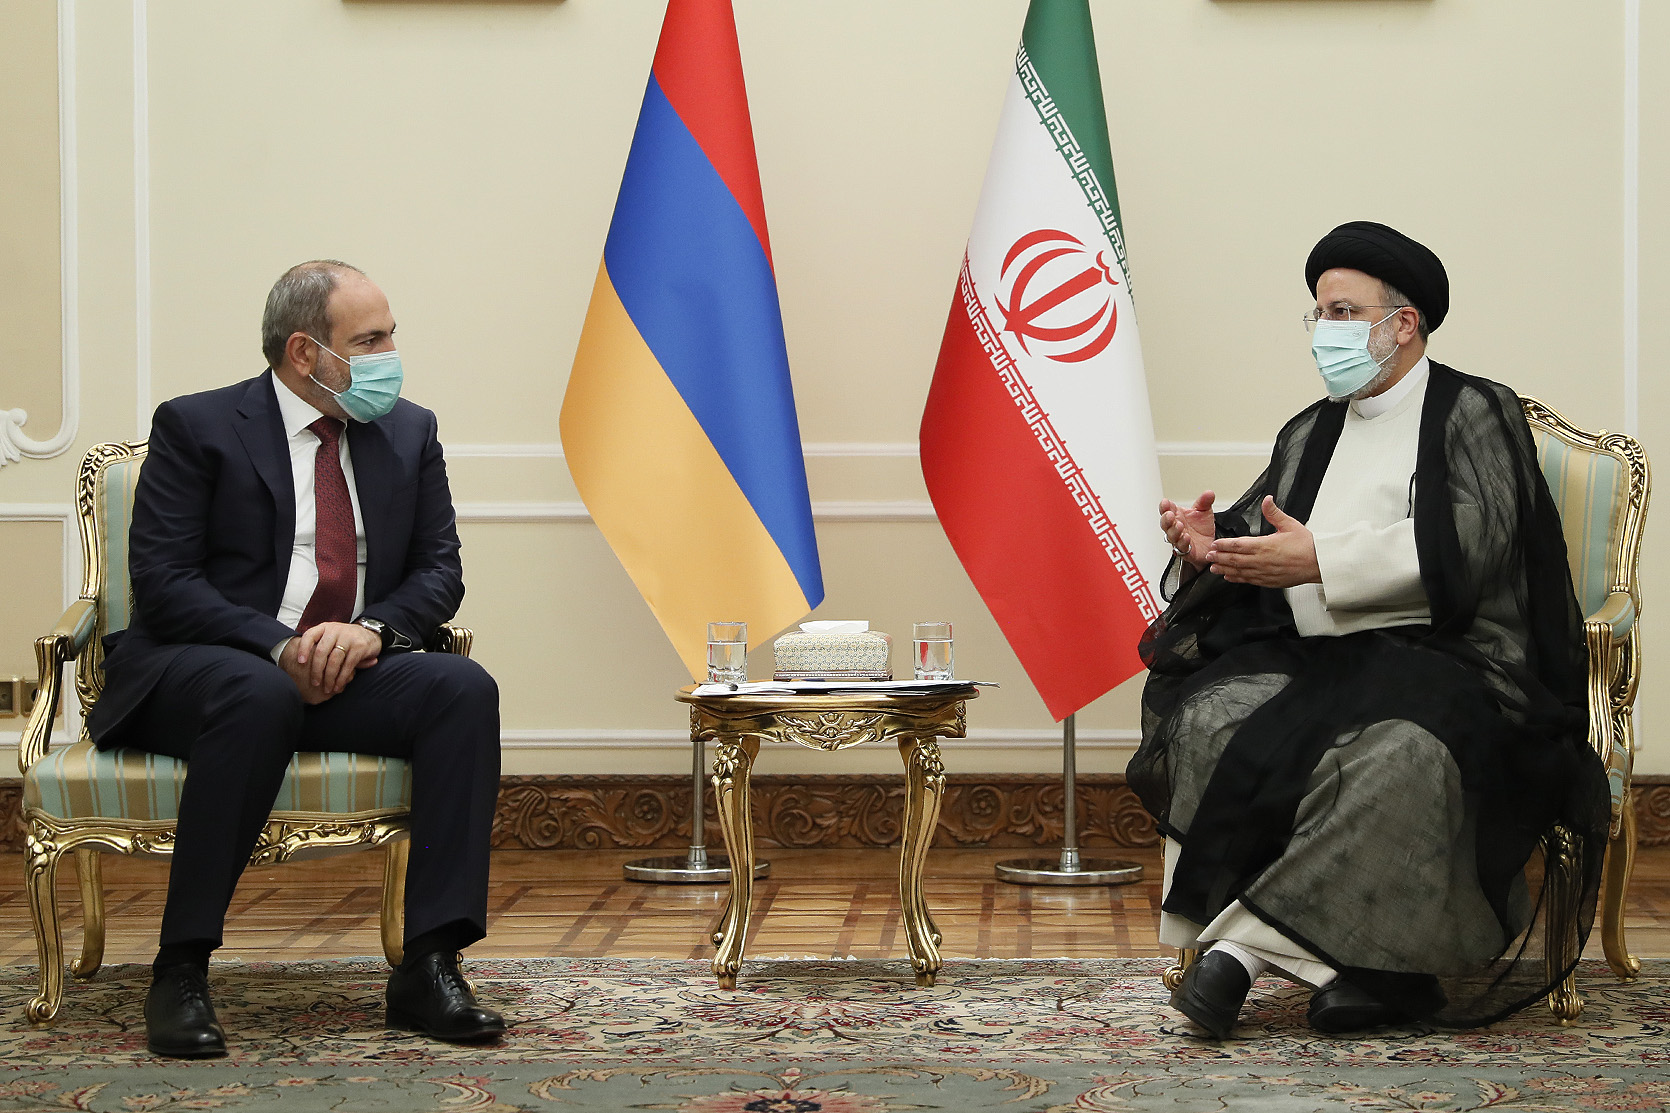 Փաշինյանն ու Ռաիսին քննարկել են Հայաստանի և Իրանի հարաբերությունների ամրապնդման հարցերի լայն շրջանակ